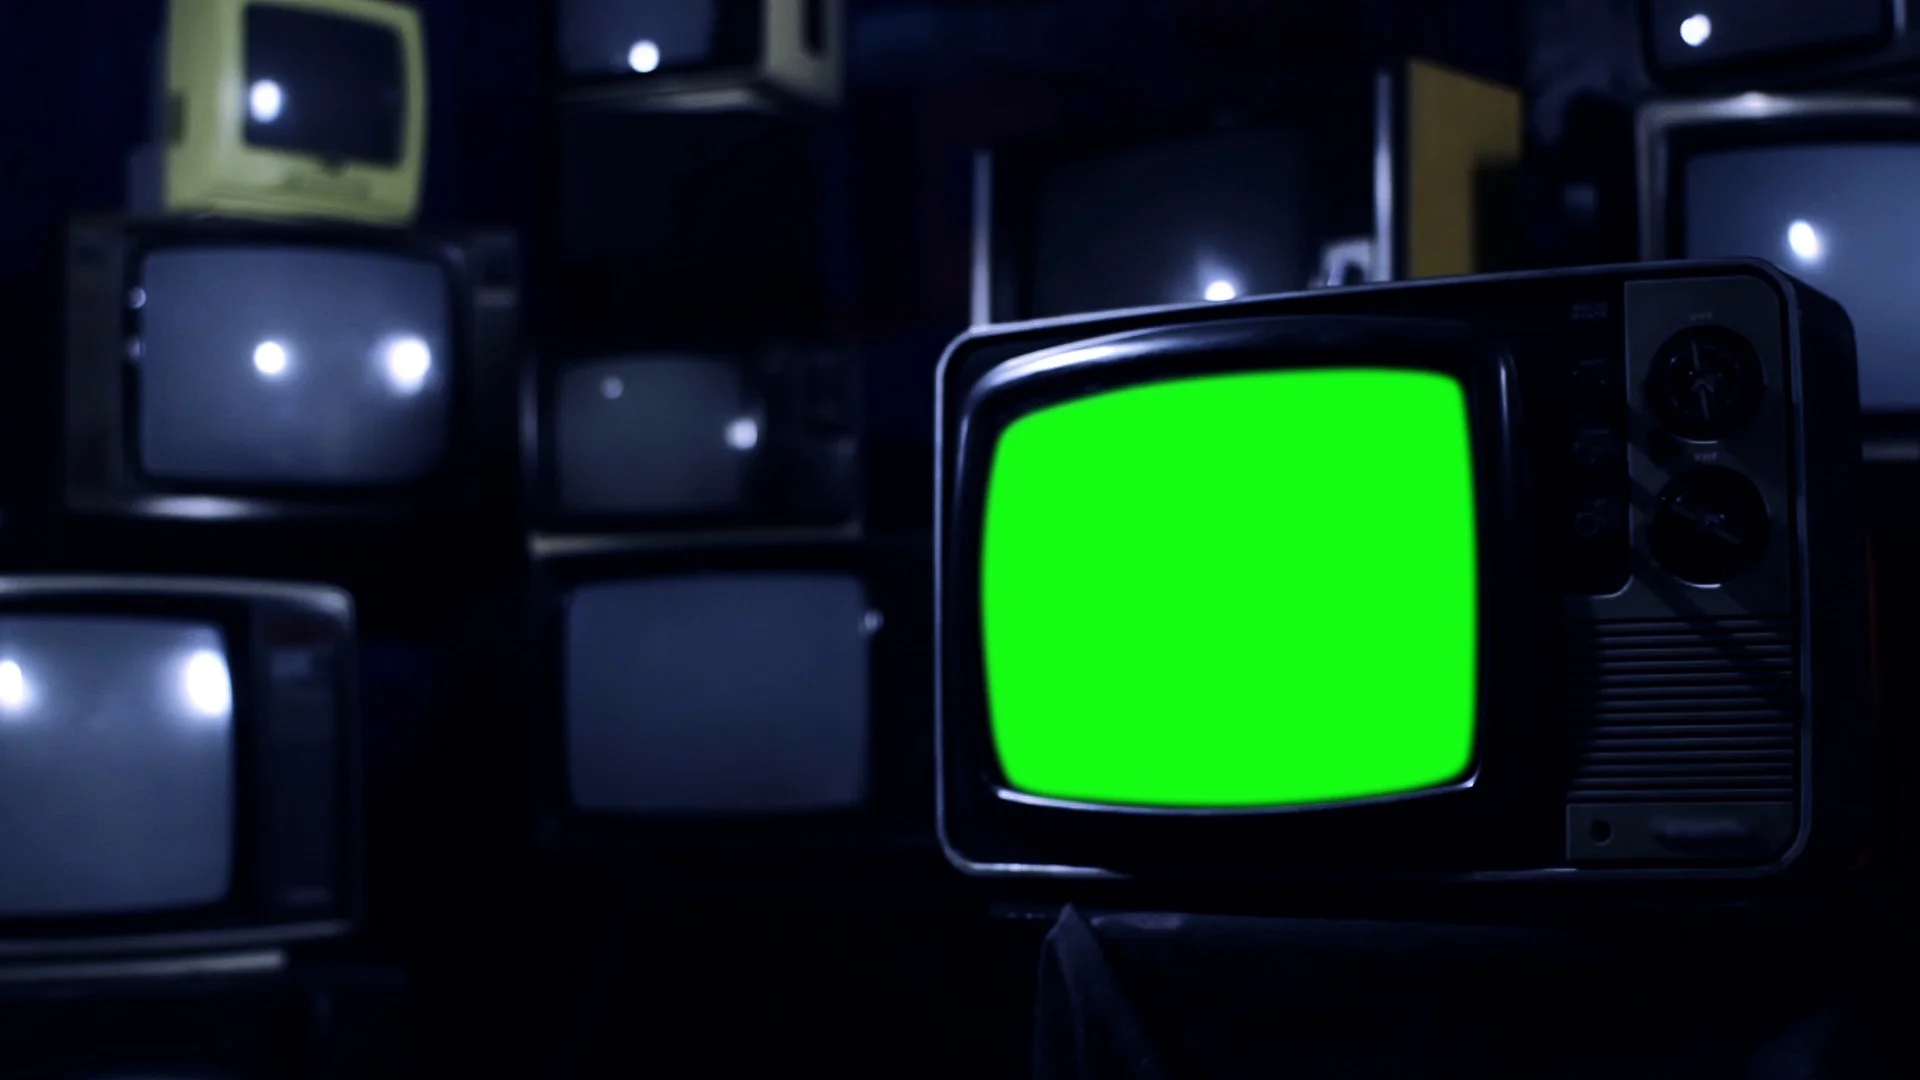 Chiếc TV thuộc thập kỷ 80 với kiểu dáng độc đáo và phong cách retro sẽ đưa bạn trở về thời kỳ hoàng kim của TV đen trắng. Hãy để chiếc TV này giúp bạn thưởng thức các bộ phim retro của thập niên 80, với chất lượng hình ảnh đầy hoài niệm.